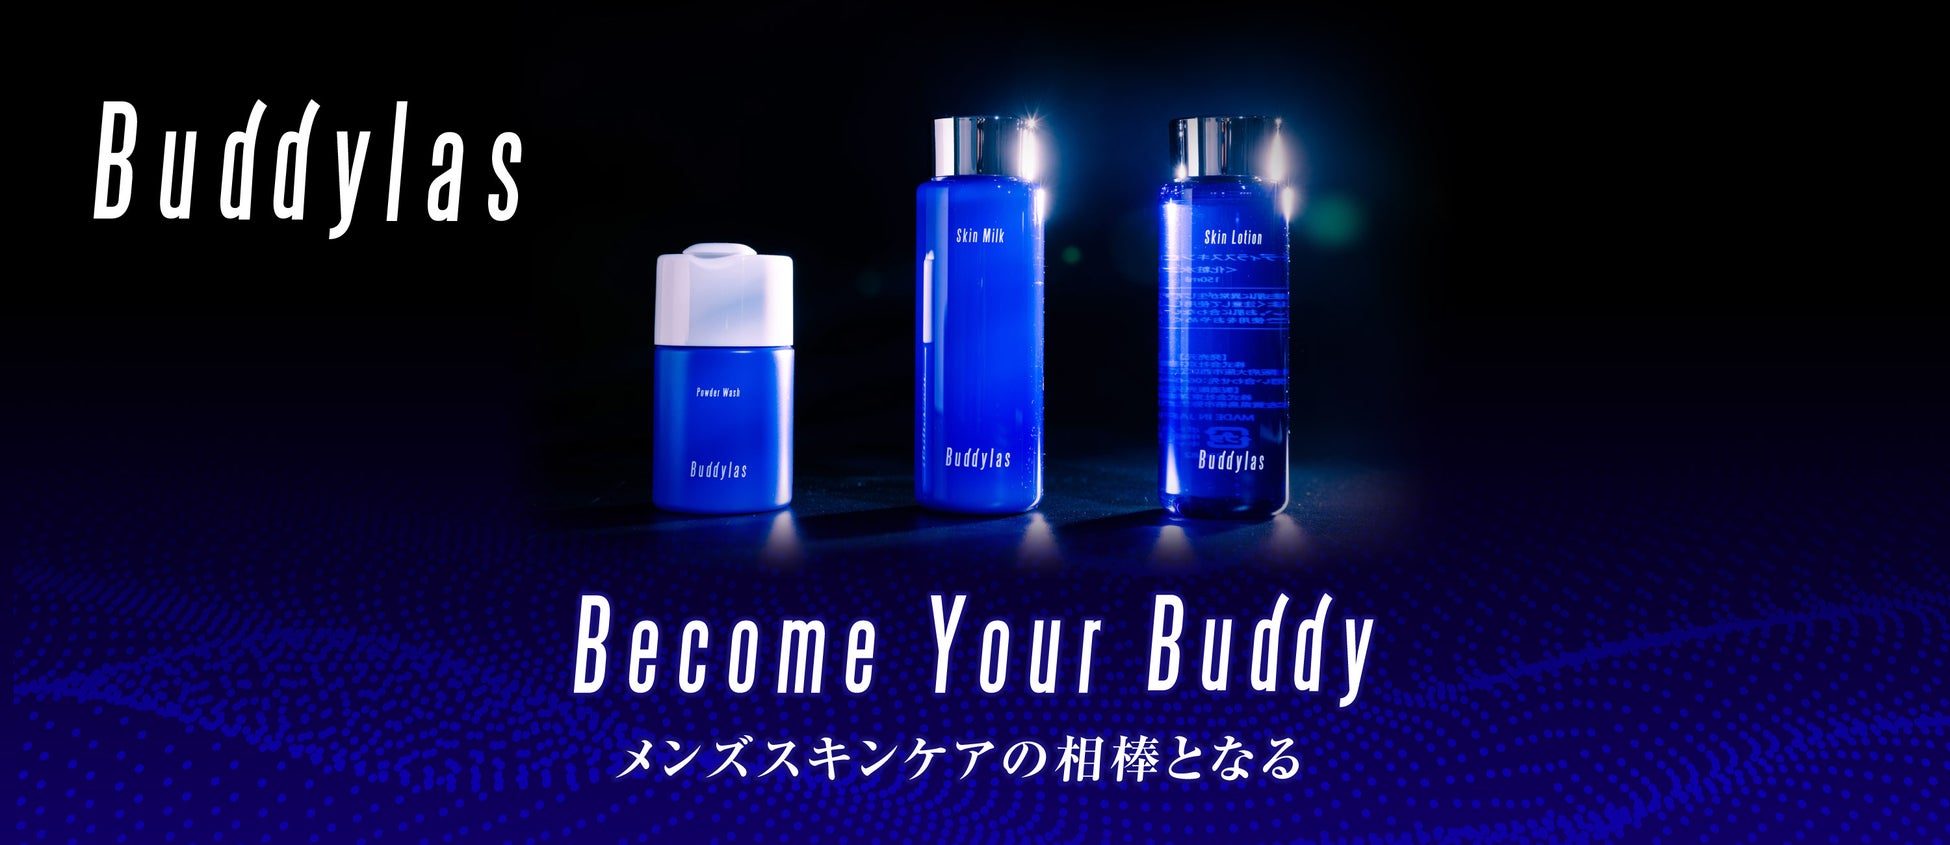 京福堂、20代から30代向けの新たなメンズスキンケアブランド「Buddylas」シリーズを立ち上げ、化粧水・乳液・洗顔パウダー・泡立てネットを新発売